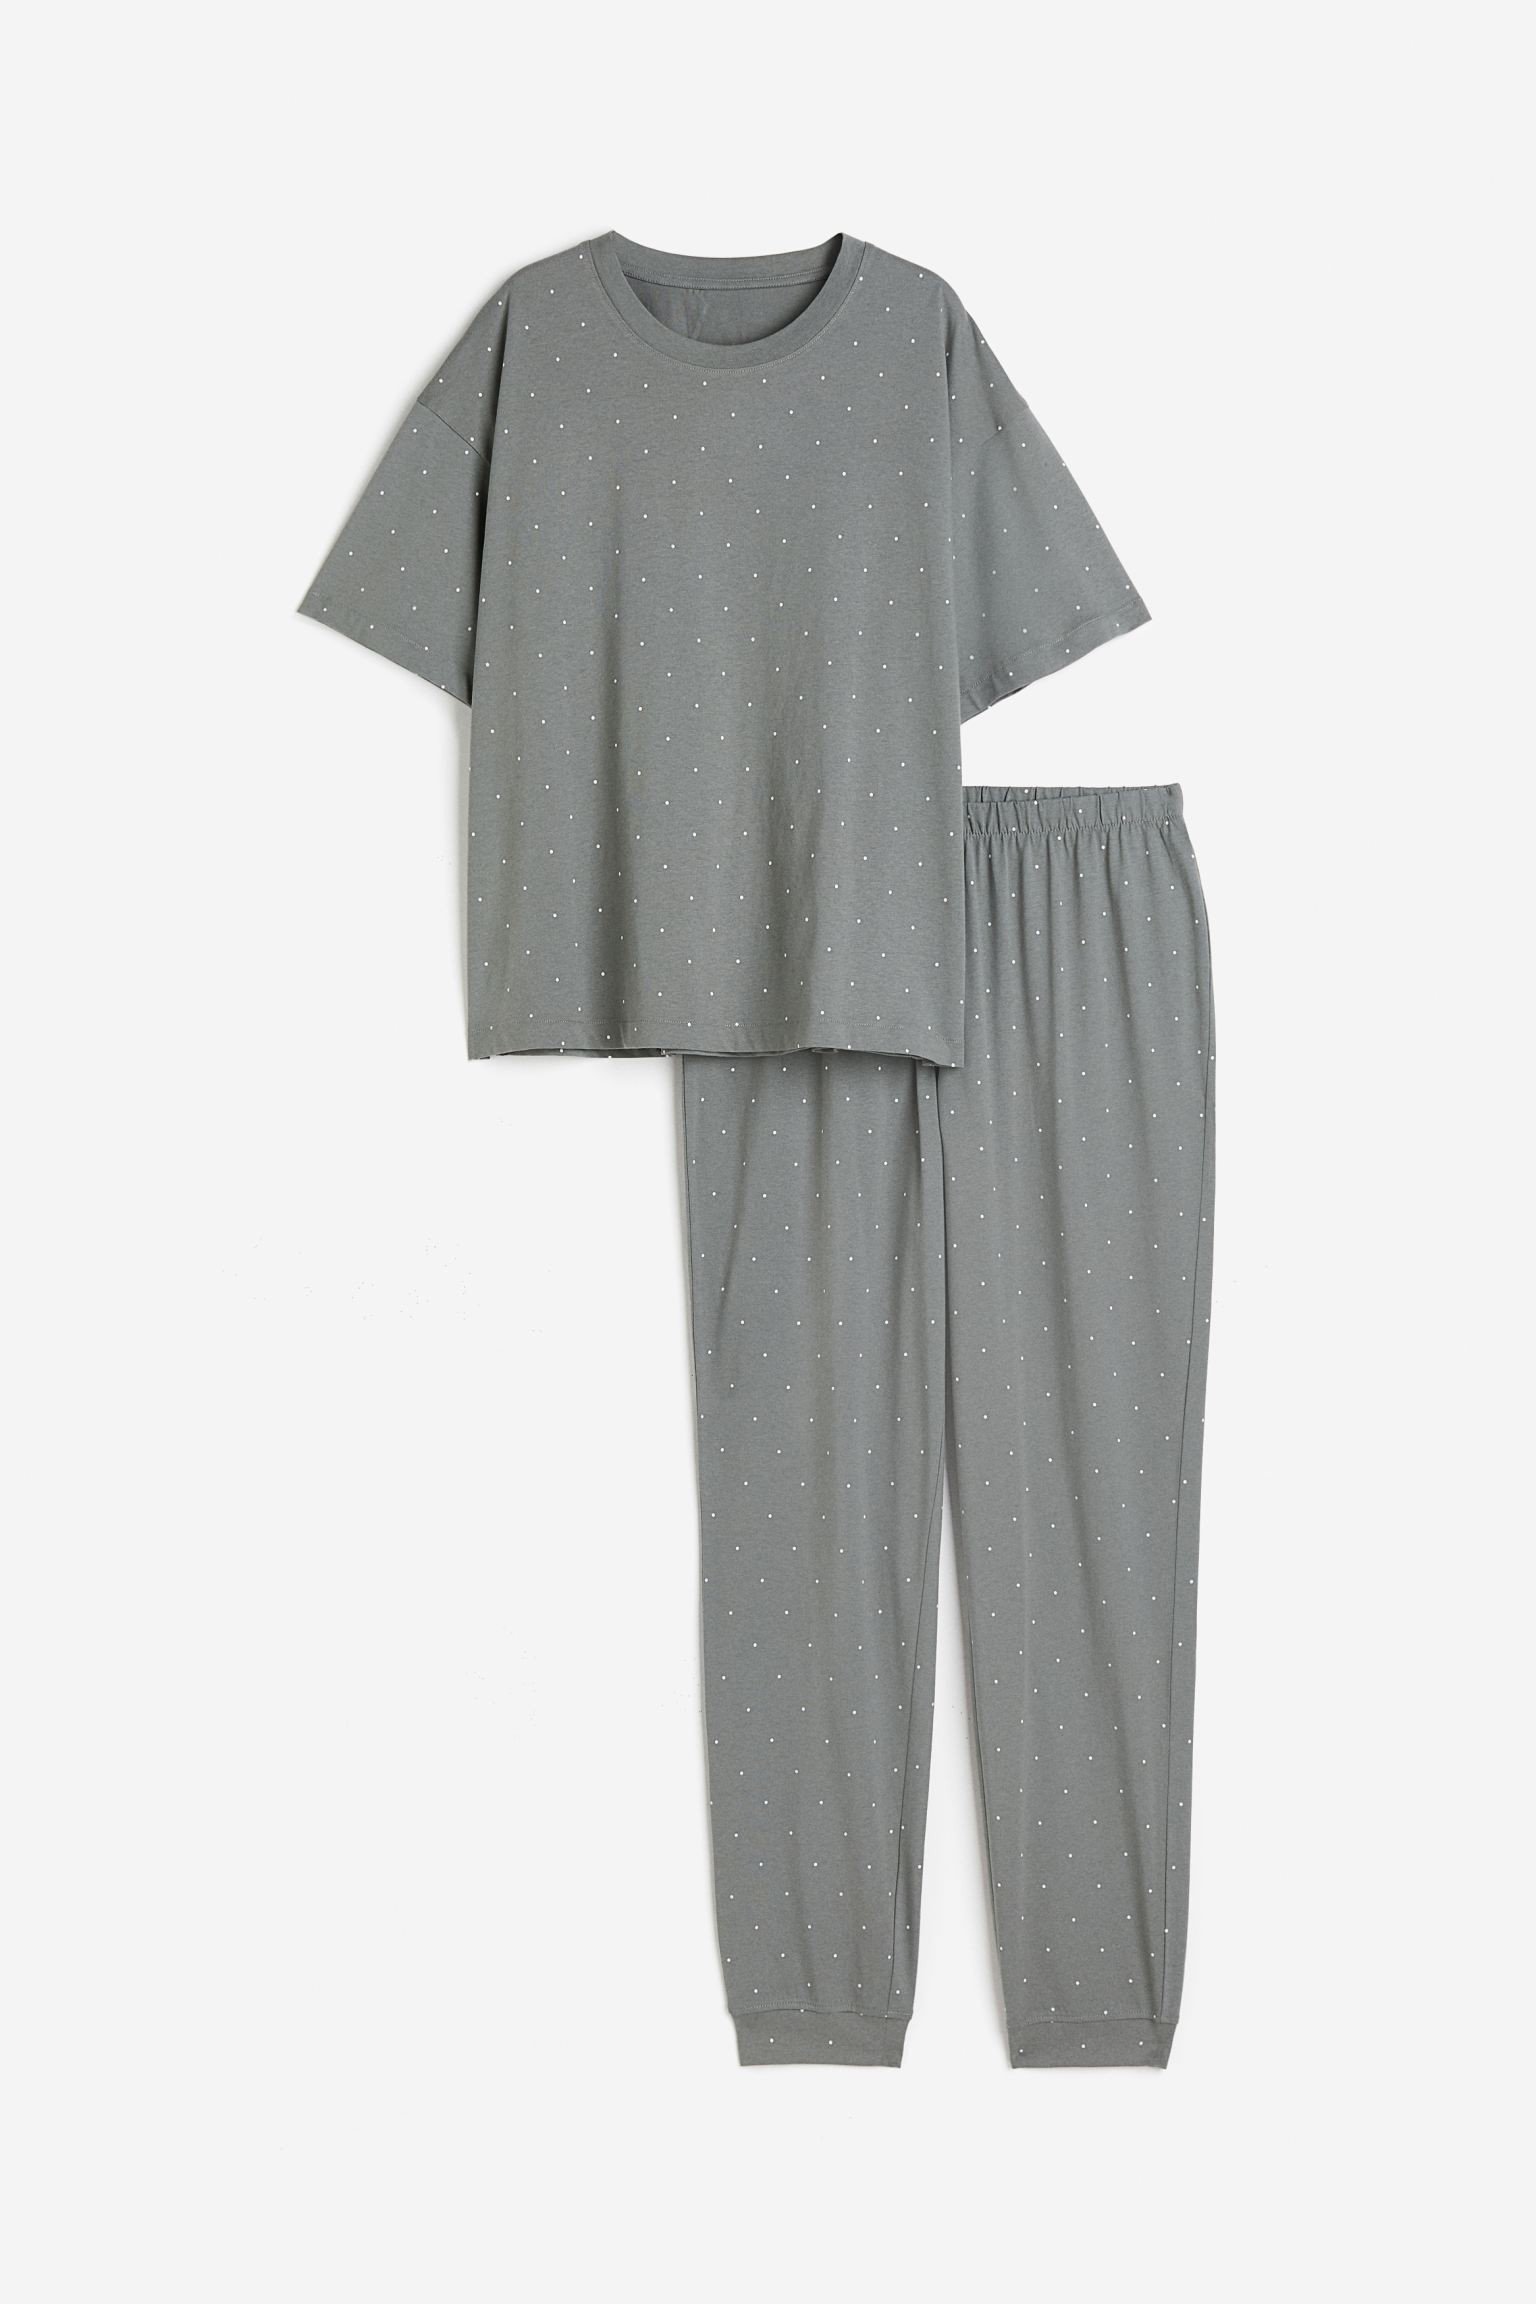 H&M Home Трикотажная пижама, Серый/Точки, Разные размеры 0970593021 | 0970593021